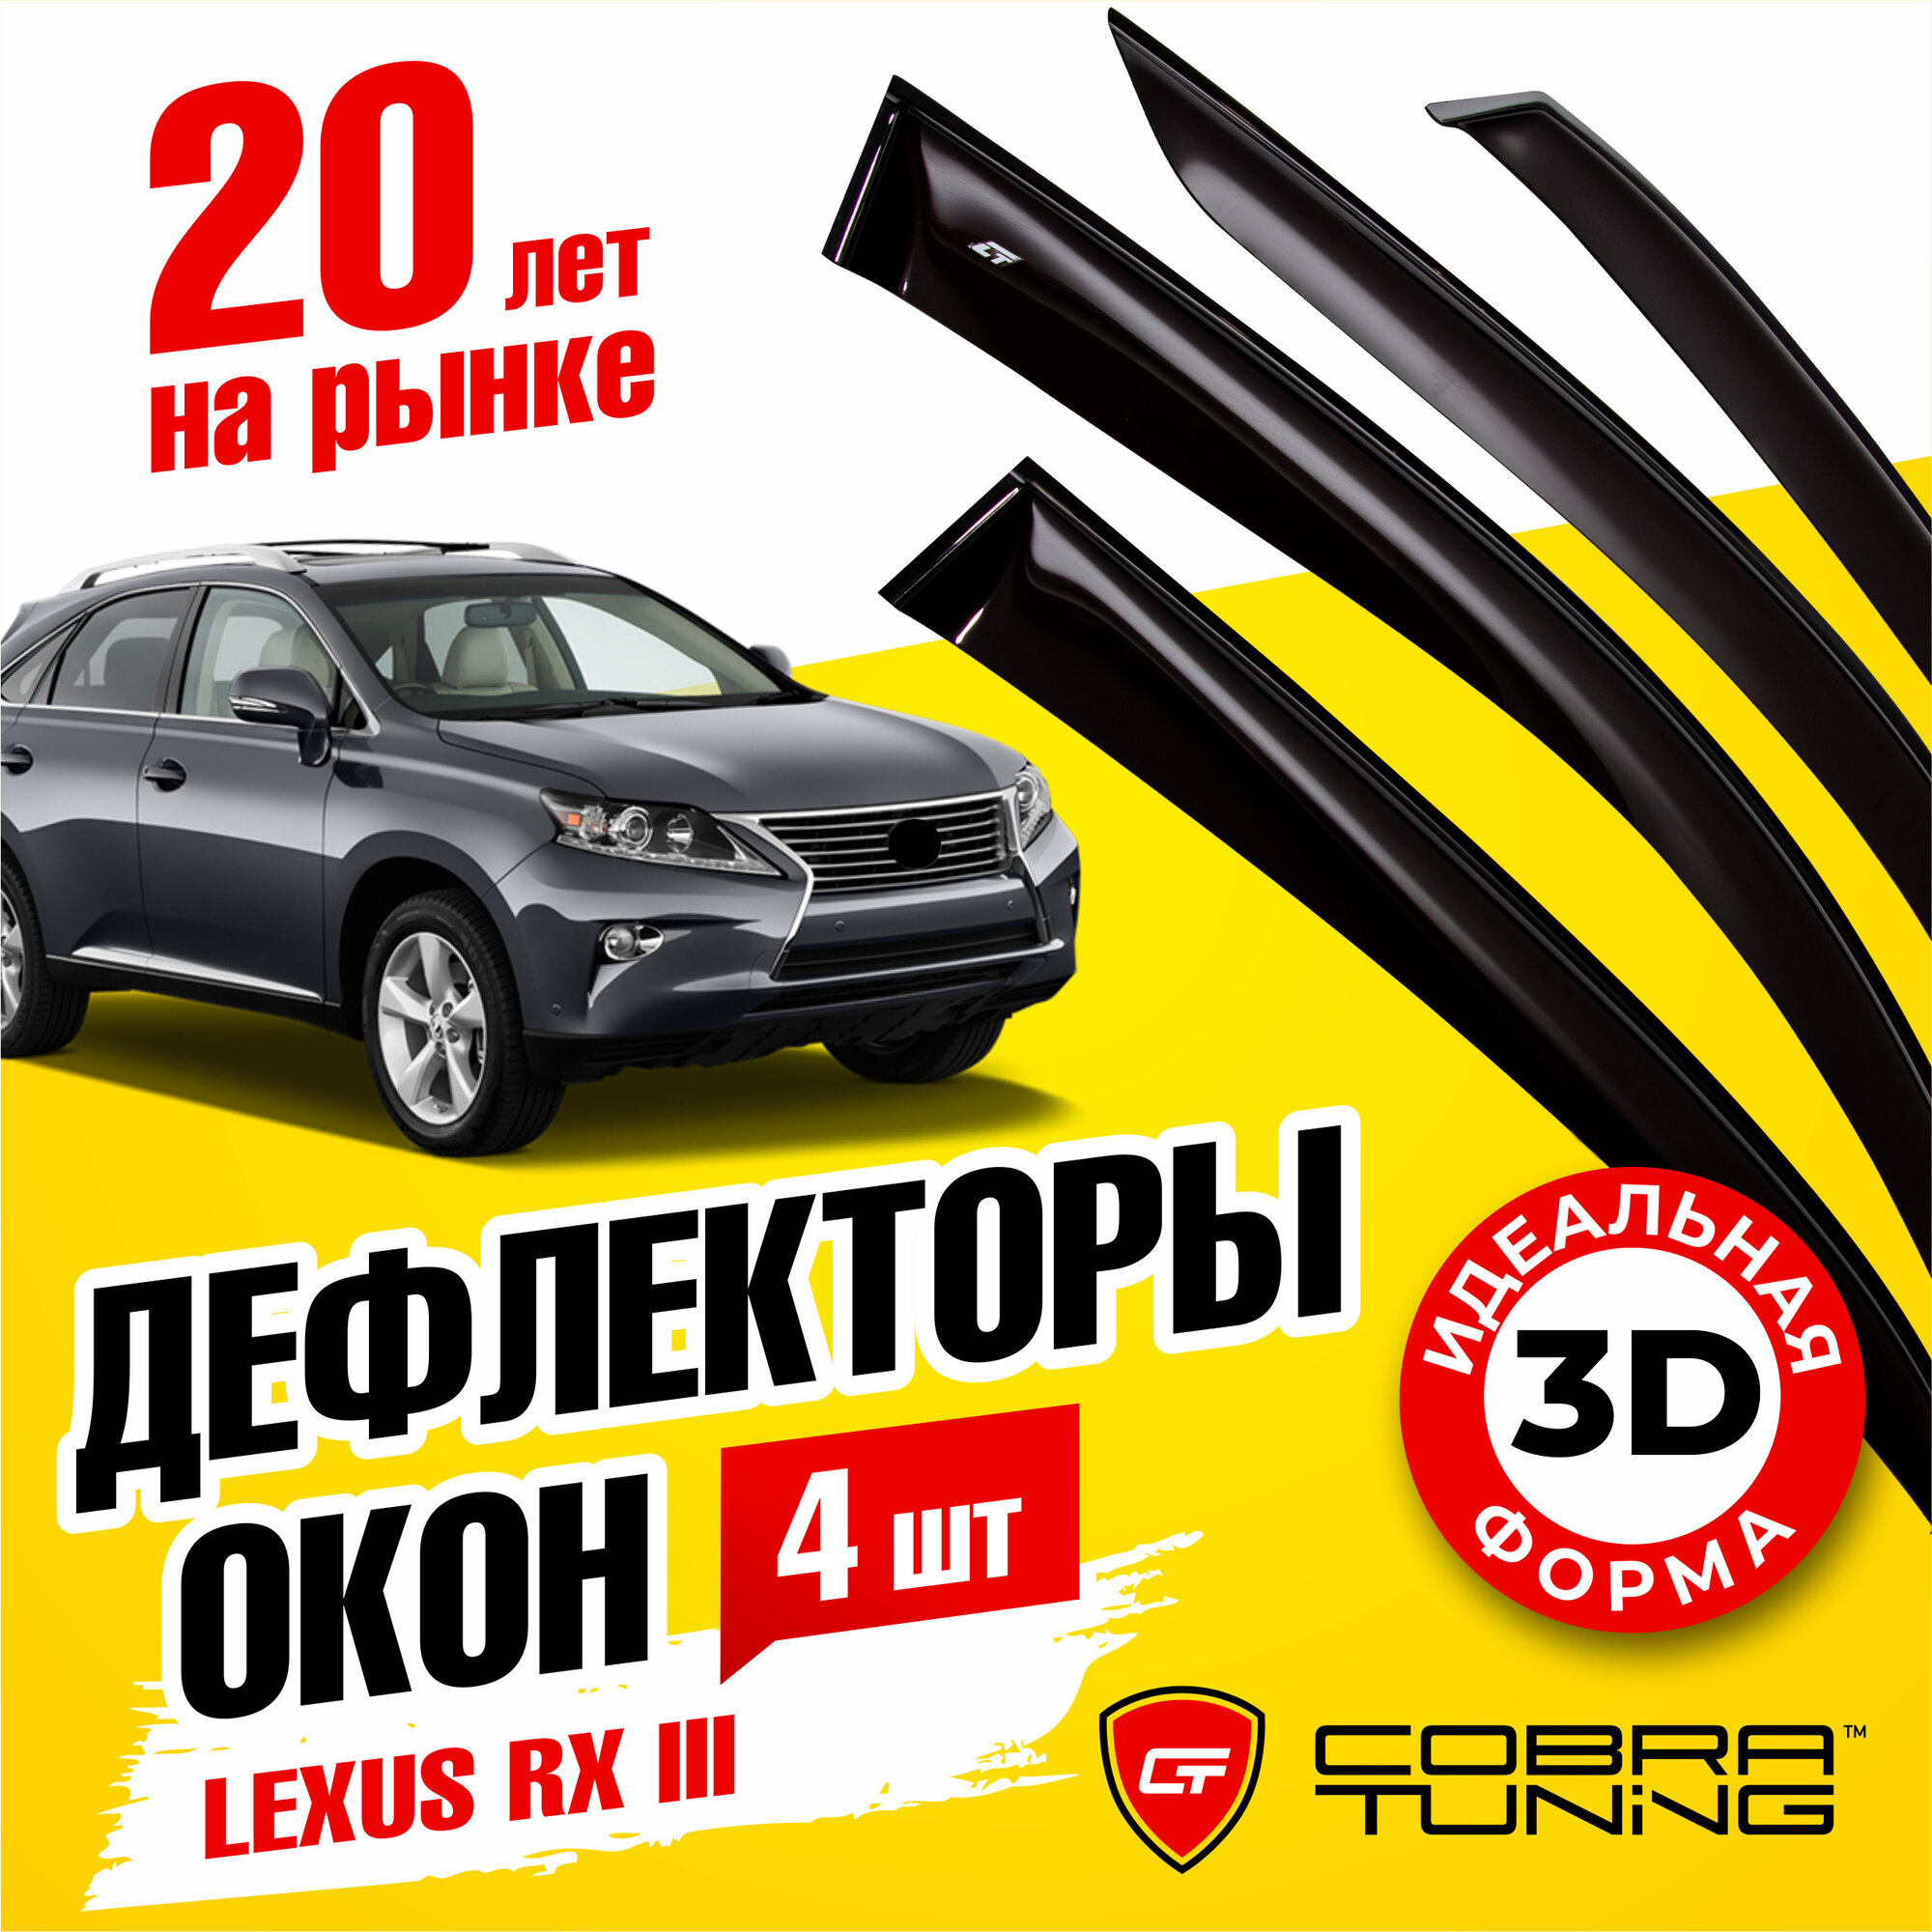 Дефлекторы боковых окон для Lexus RХ 3 (Лексус) 2010-2015, ветровики на двери автомобиля, Cobra Tuning